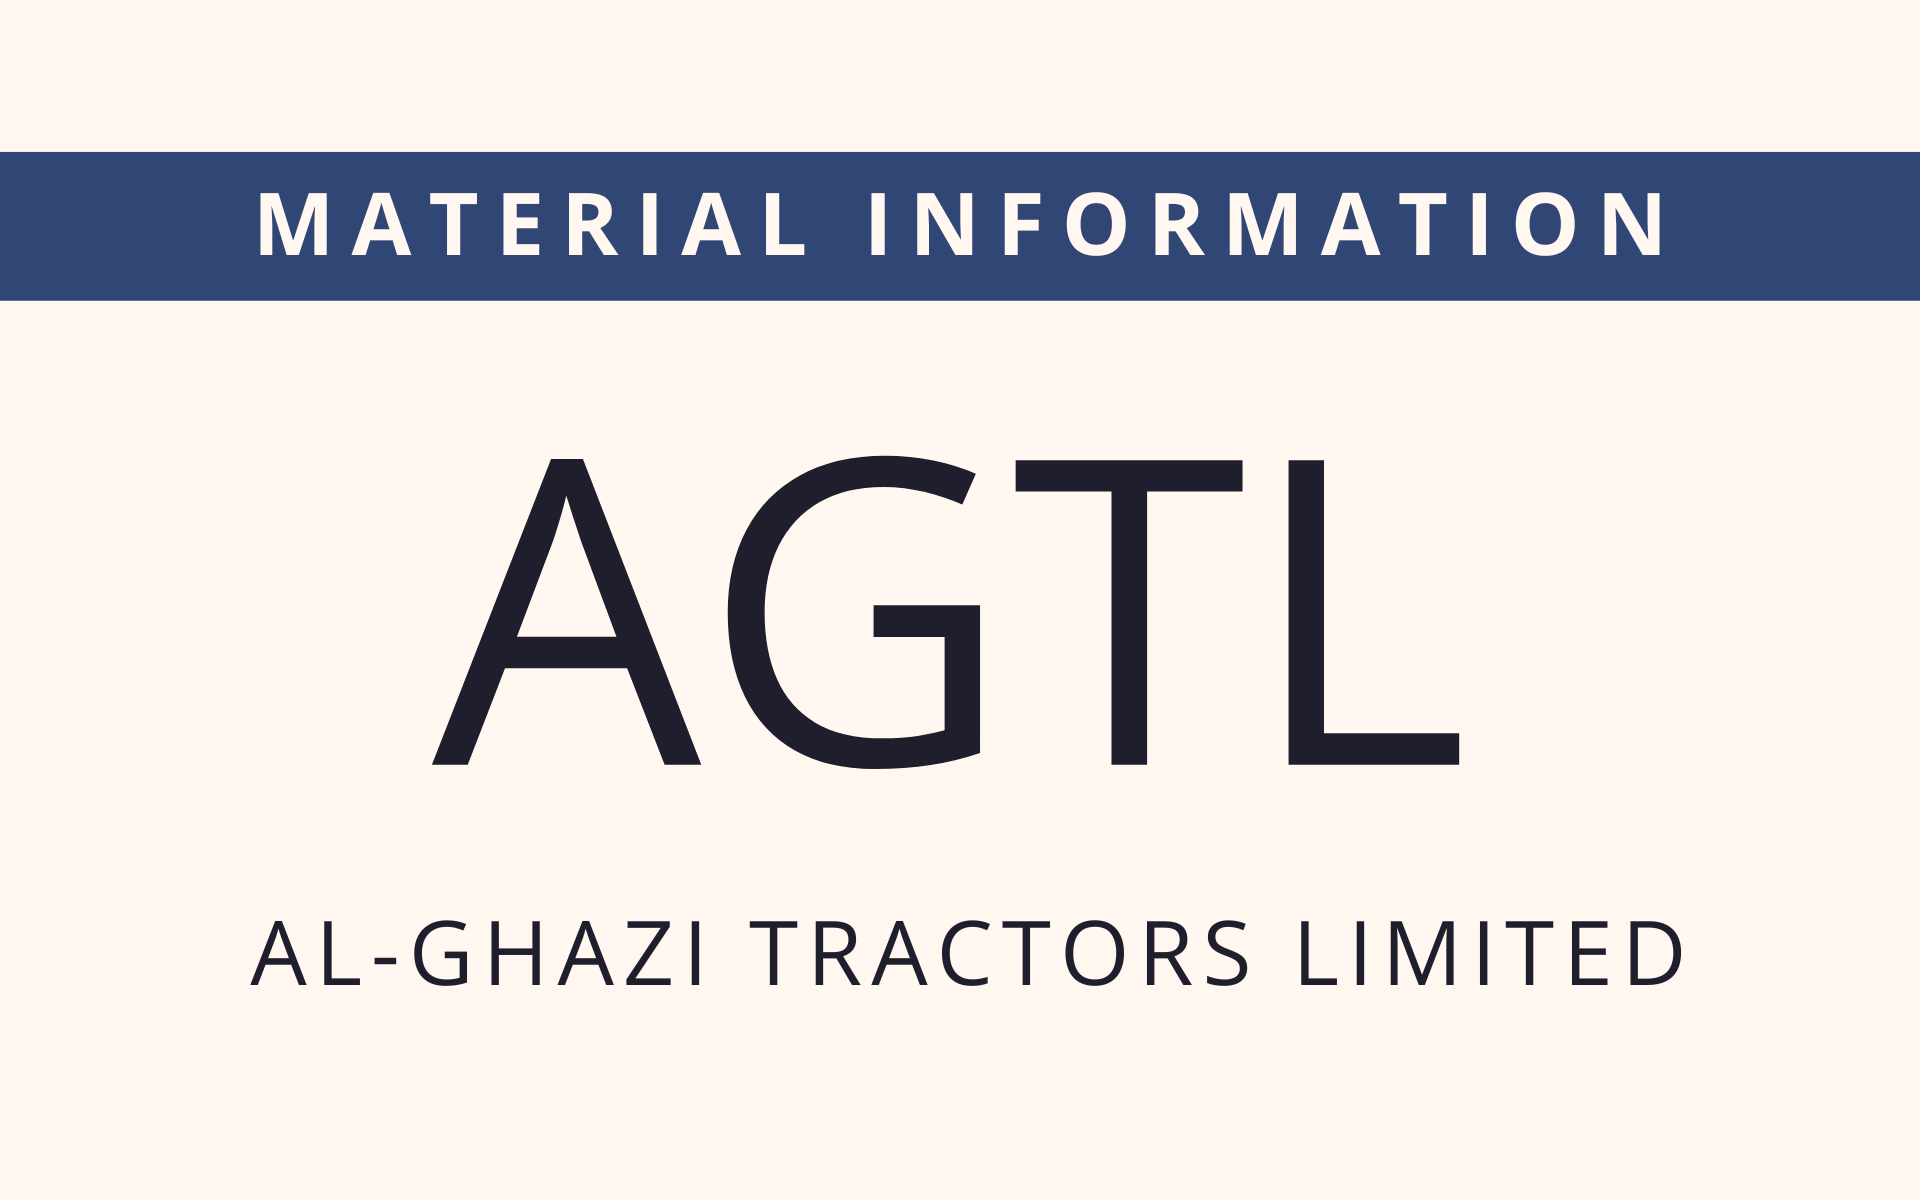 AGTL - Material Information